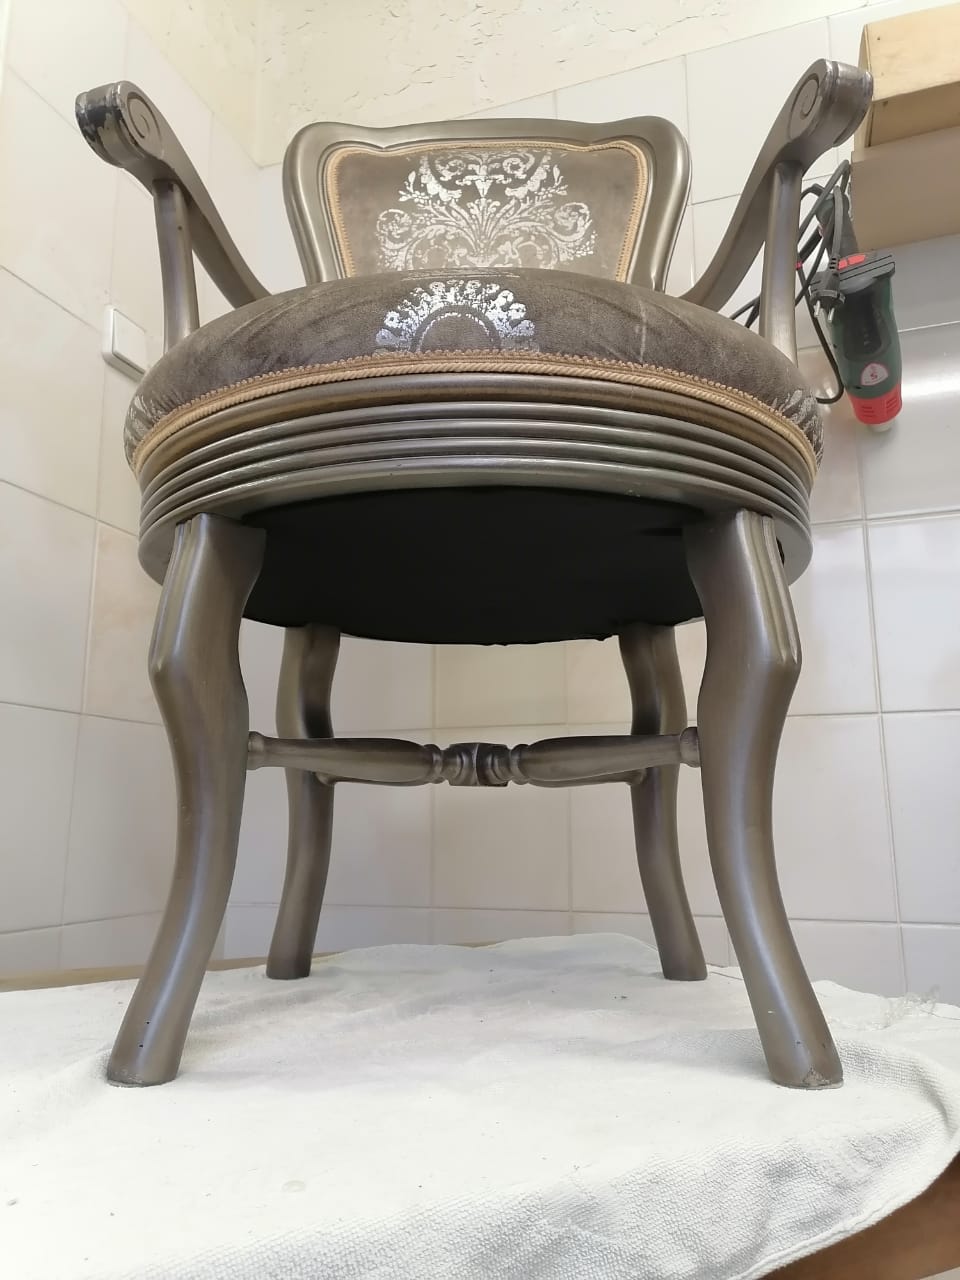 Реставрация вращающегося кресла из гарнитура элитной мебели в реставрационной мастерской Restorer.expert